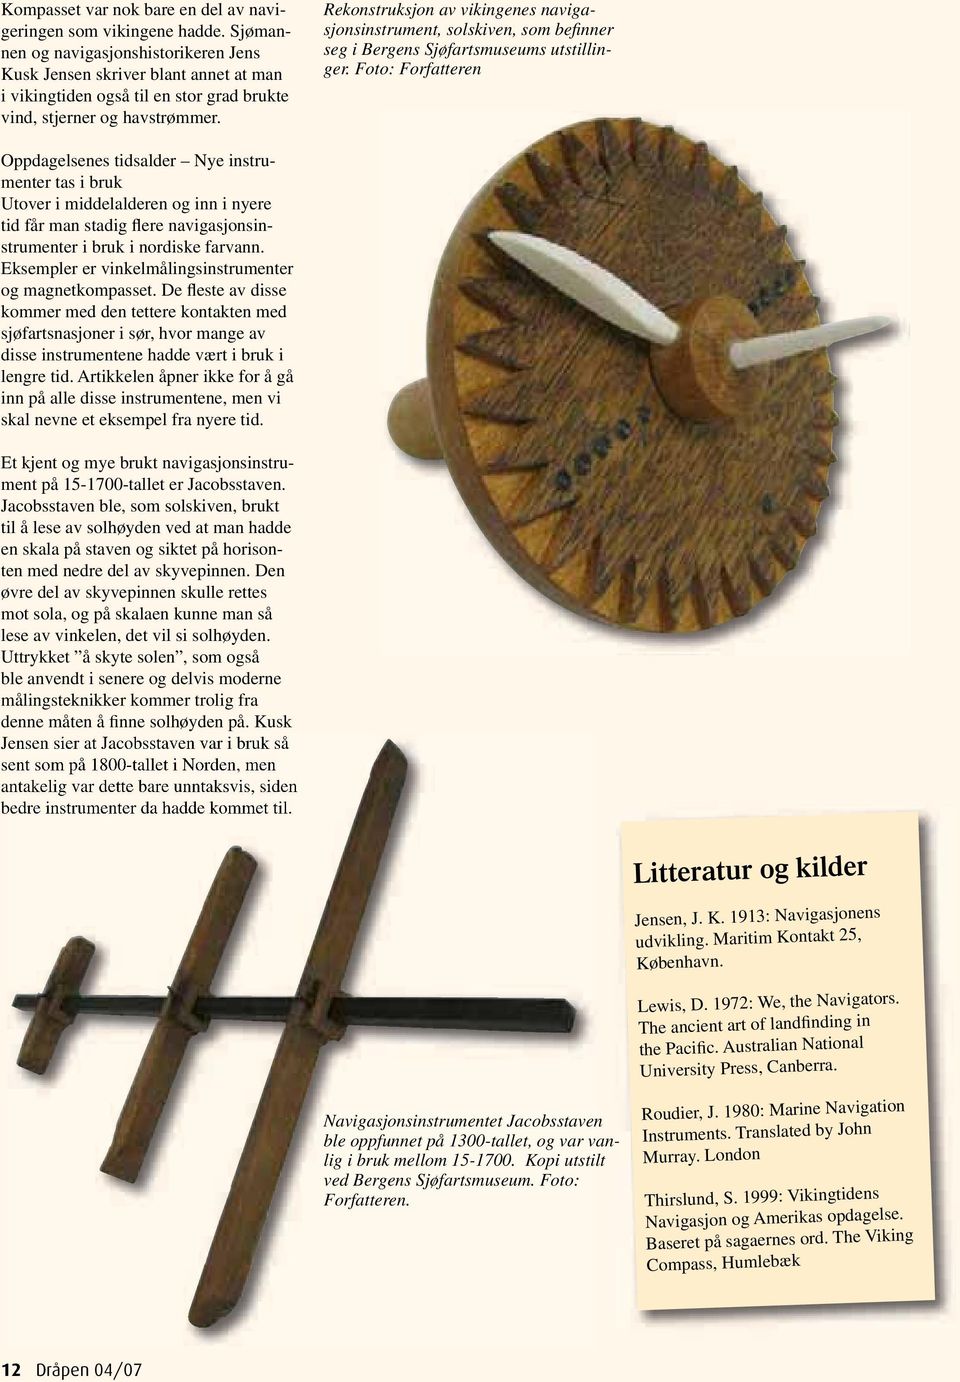 Rekonstruksjon av vikingenes navigasjonsinstrument, solskiven, som befinner seg i Bergens Sjøfartsmuseums utstillinger.